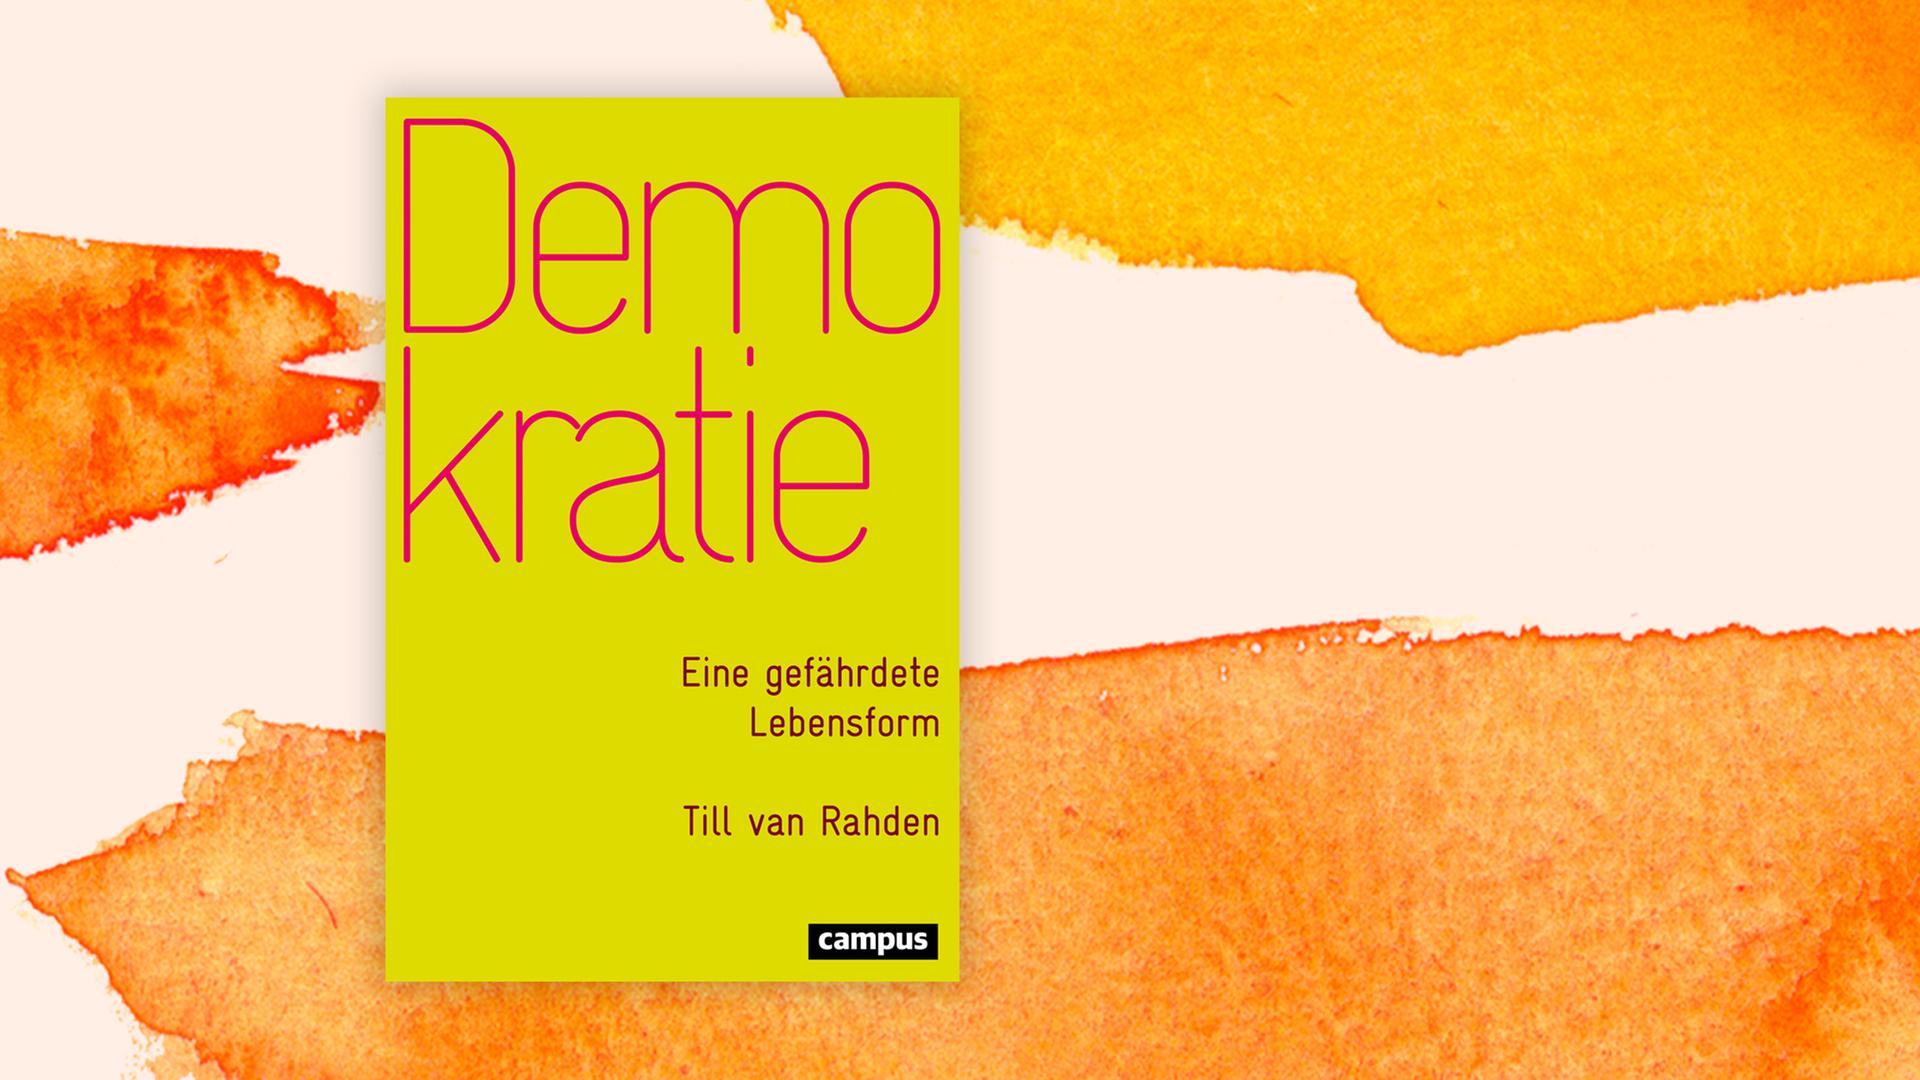 Buch-Cover von "Demokratie. Eine gefährdete Lebensform" von Till van Rahden.